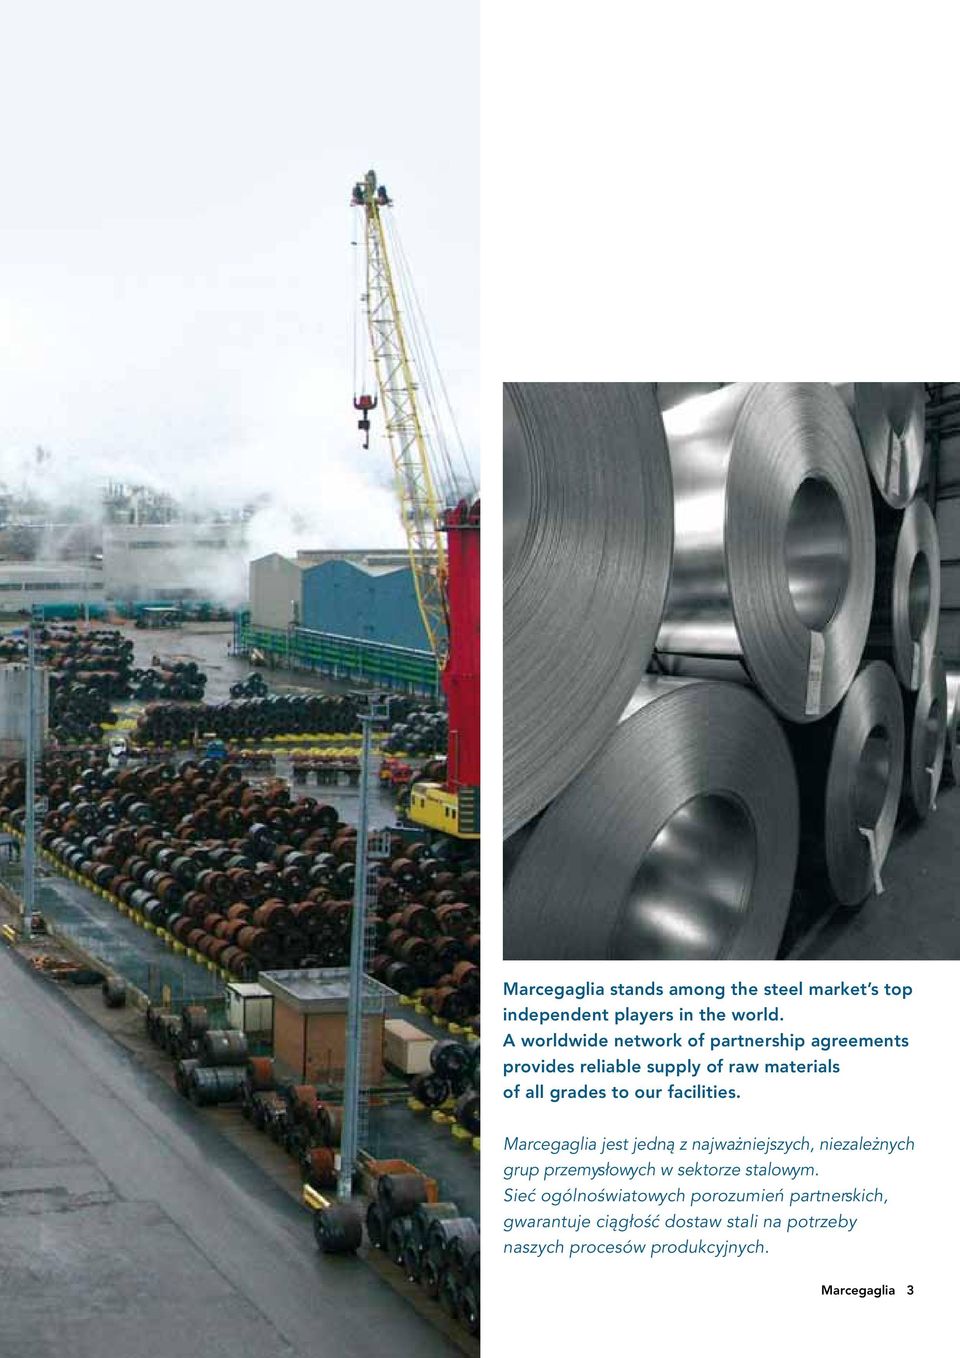 facilities. Marcegaglia jest jedną z najważniejszych, niezależnych grup przemysłowych w sektorze stalowym.